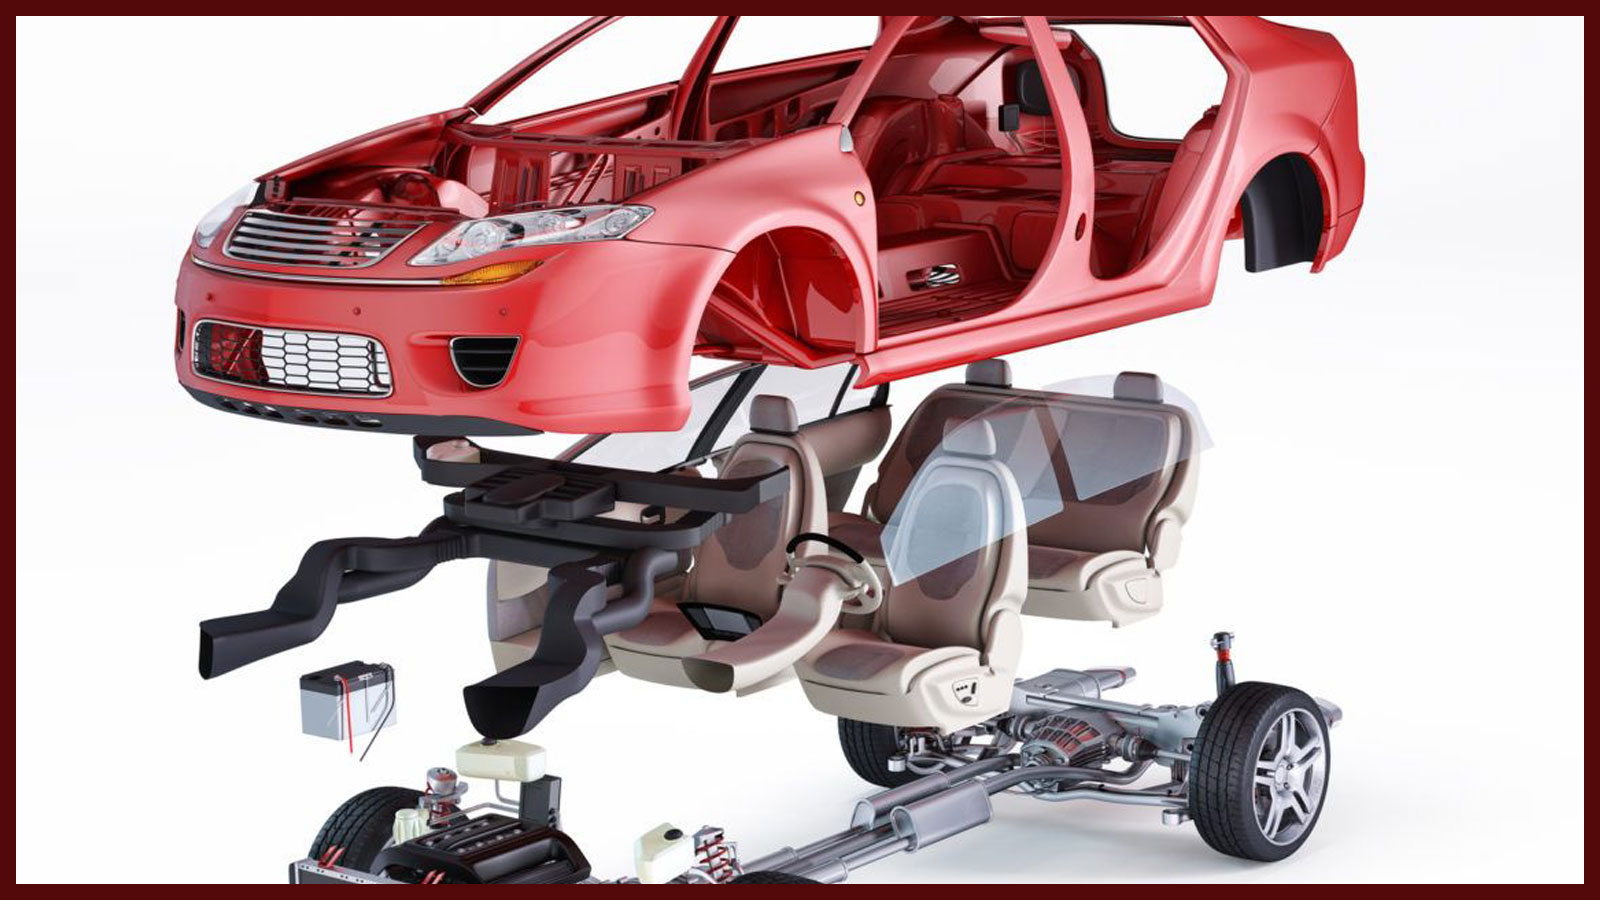 Μεταχειρισμένα ανταλλακτικά θα βρείτε για όλα τα μέρη του αυτοκινήτου. Μηχανικά, ηλεκτρονικά, ηλεκτρολογικά, πλαστικά, εξαρτήματα φανοποιίας, εξαρτήματα του κινητήρα και ου τω καθεξής